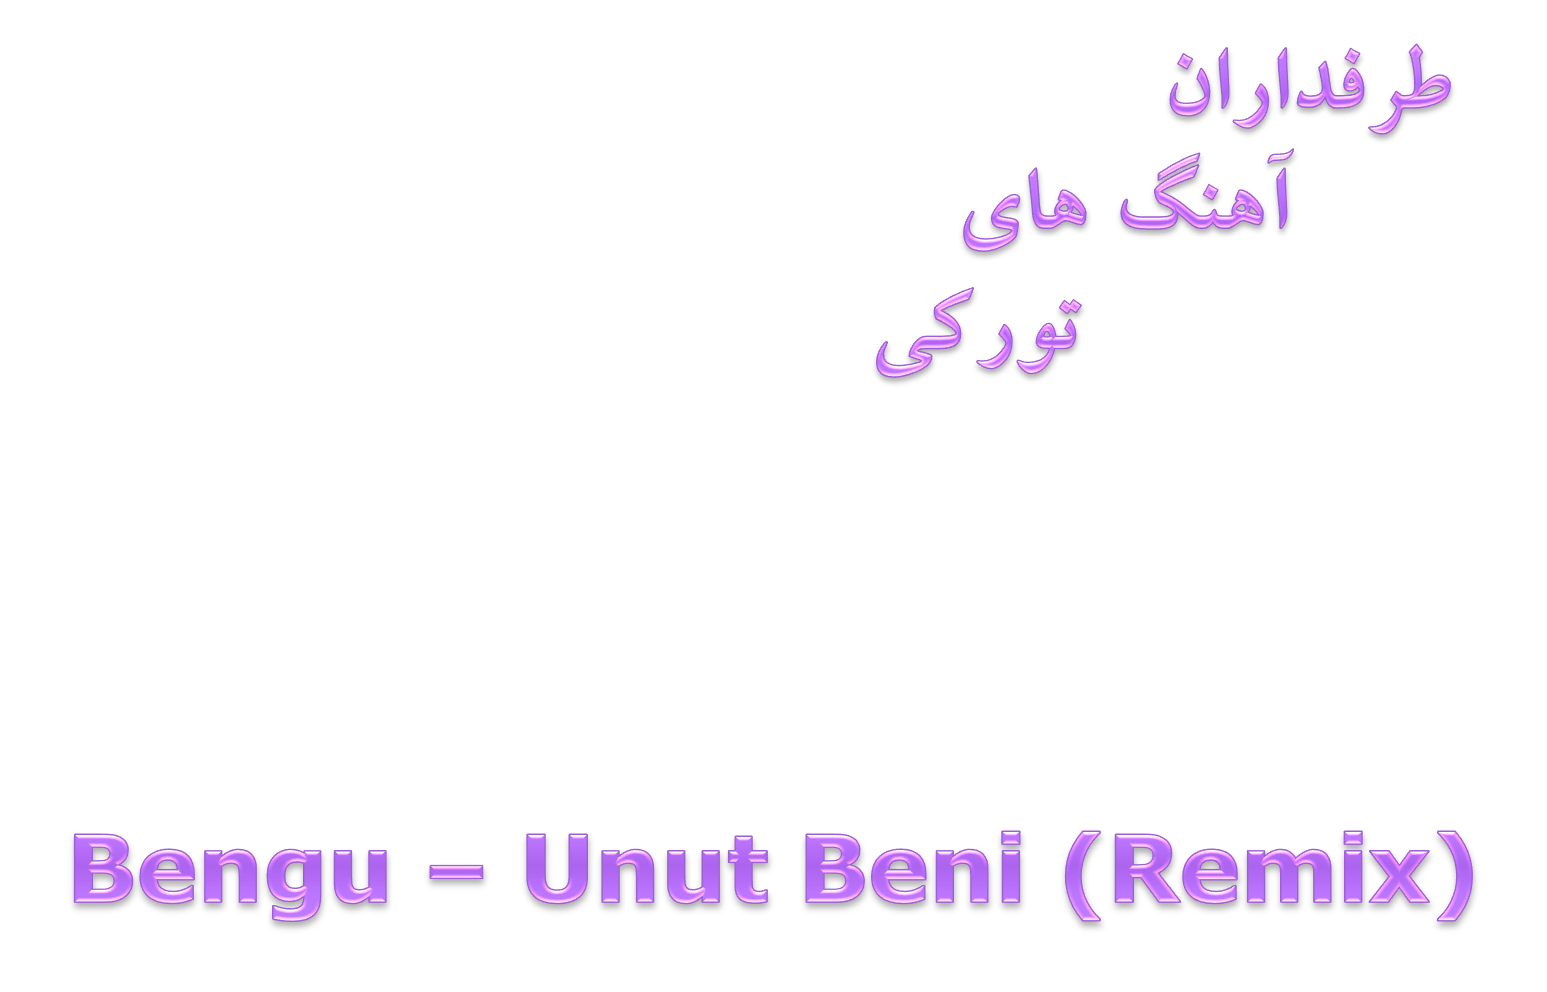 دانلود آهنگ شاد و میکس Bengü بنام Unut Beni Remix